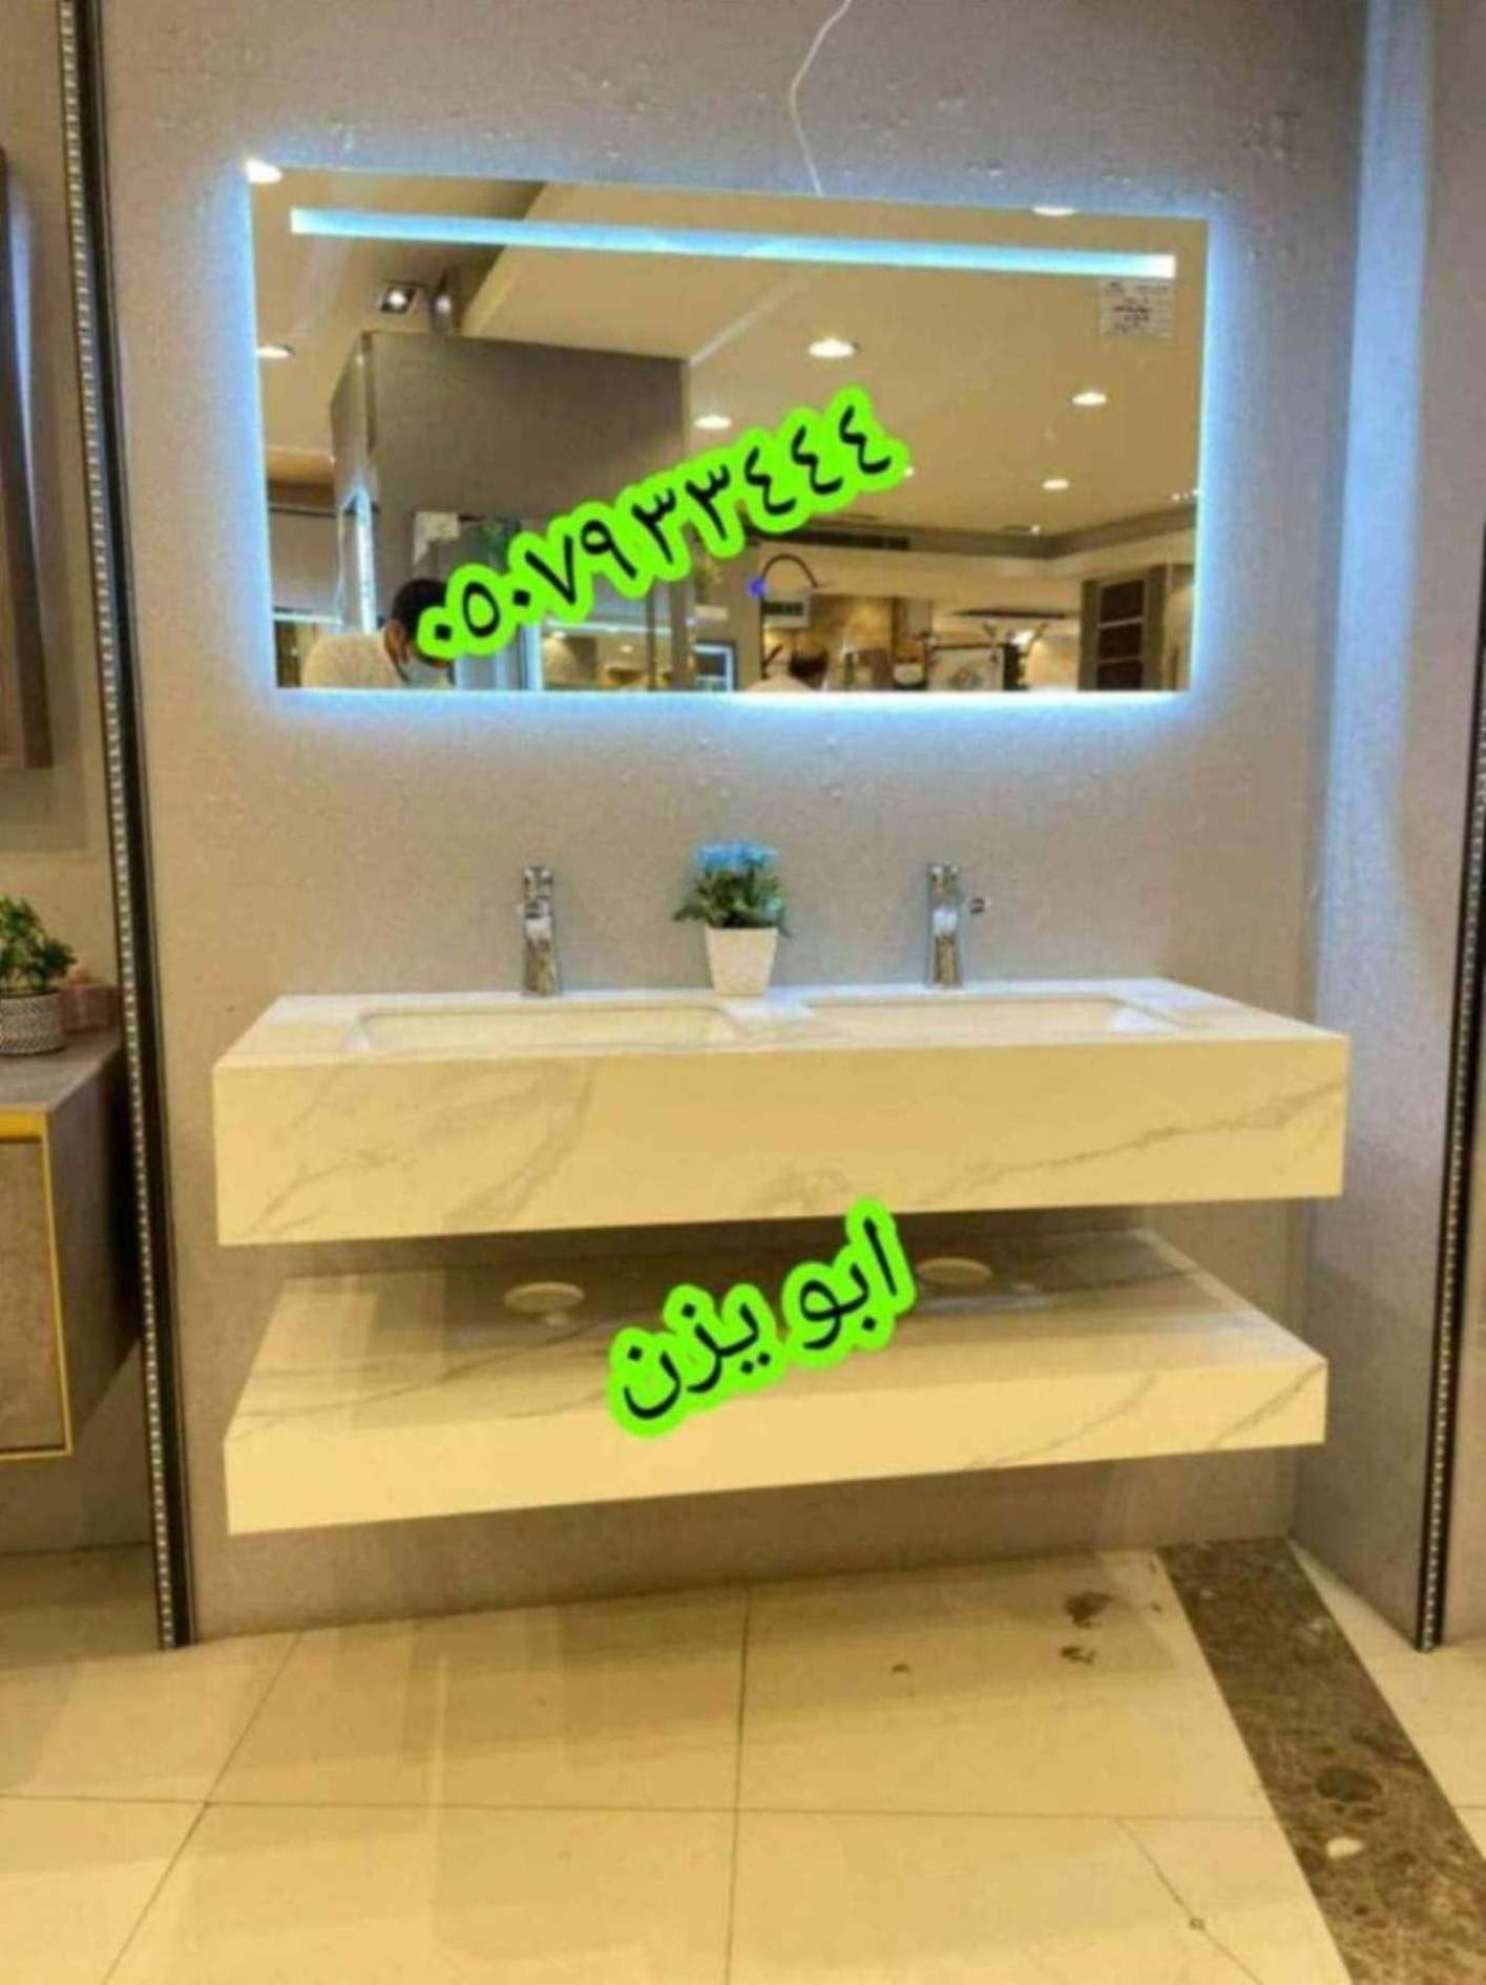 مغاسل رخام الرياض بناء مغاسل رخام حمامات في الرياض